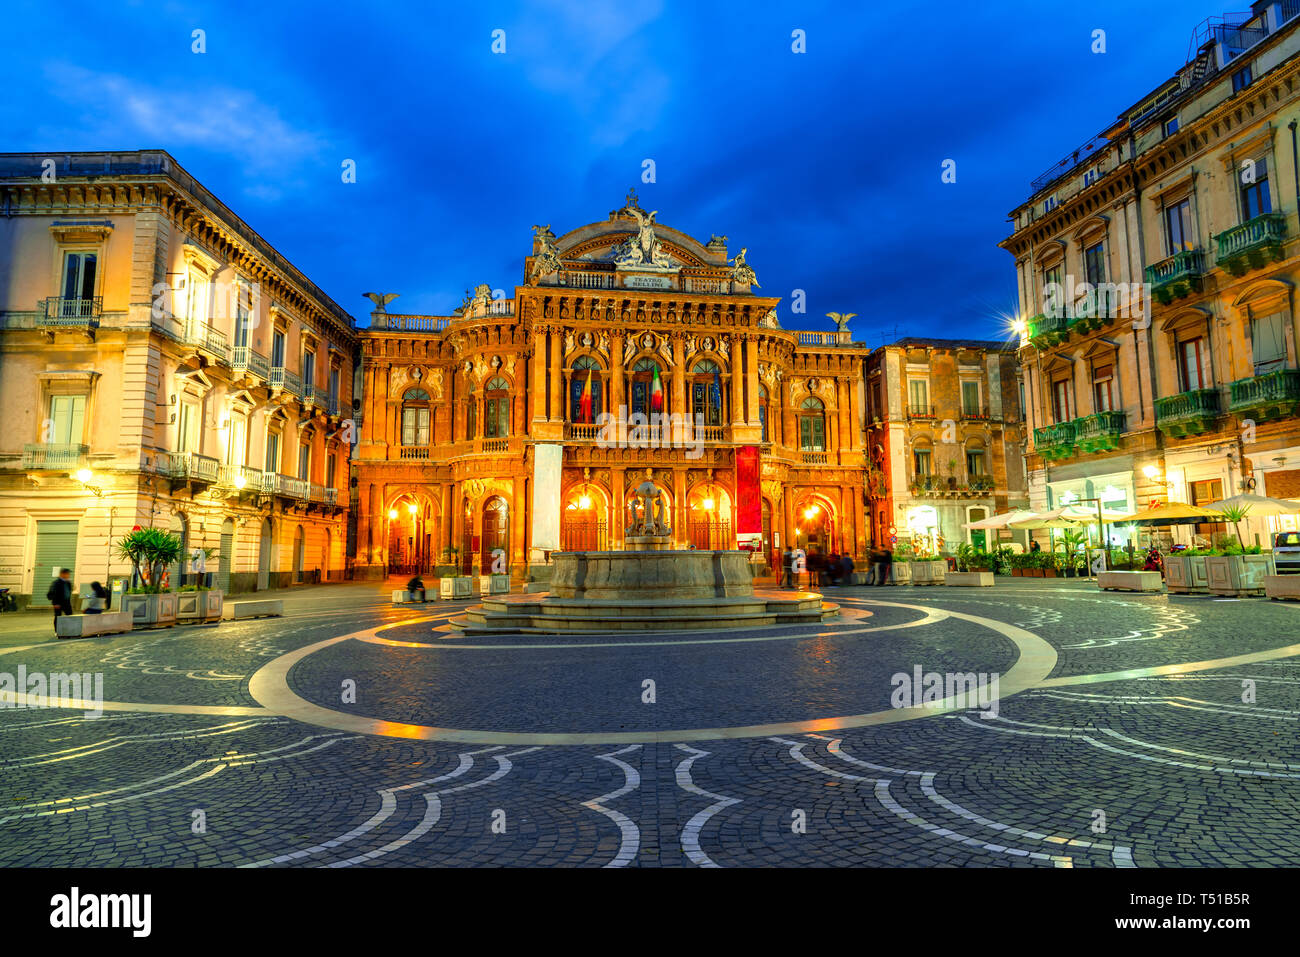 Isla de Catania, Sicilia, Italia: la fachada del teatro Massimo Bellini y la fuente para la iluminación nocturna. Foto de stock